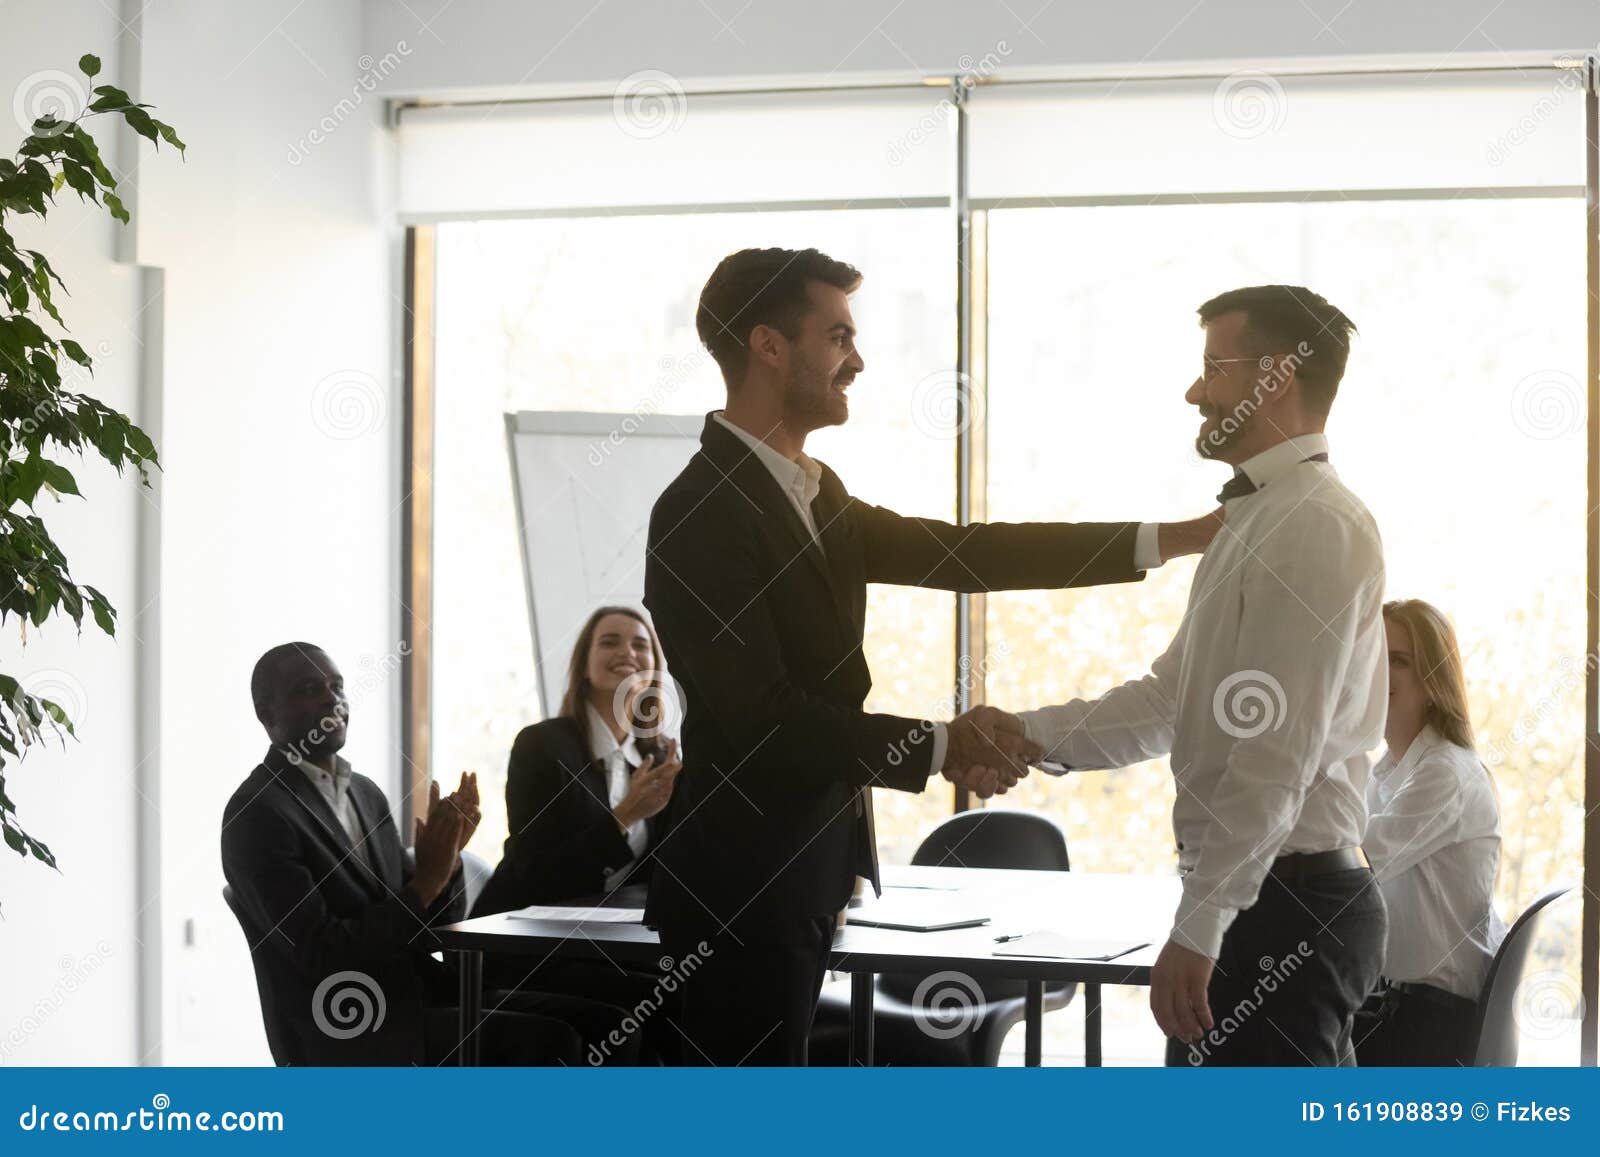 helpful proud boss handshaking praising male worker express appreciation